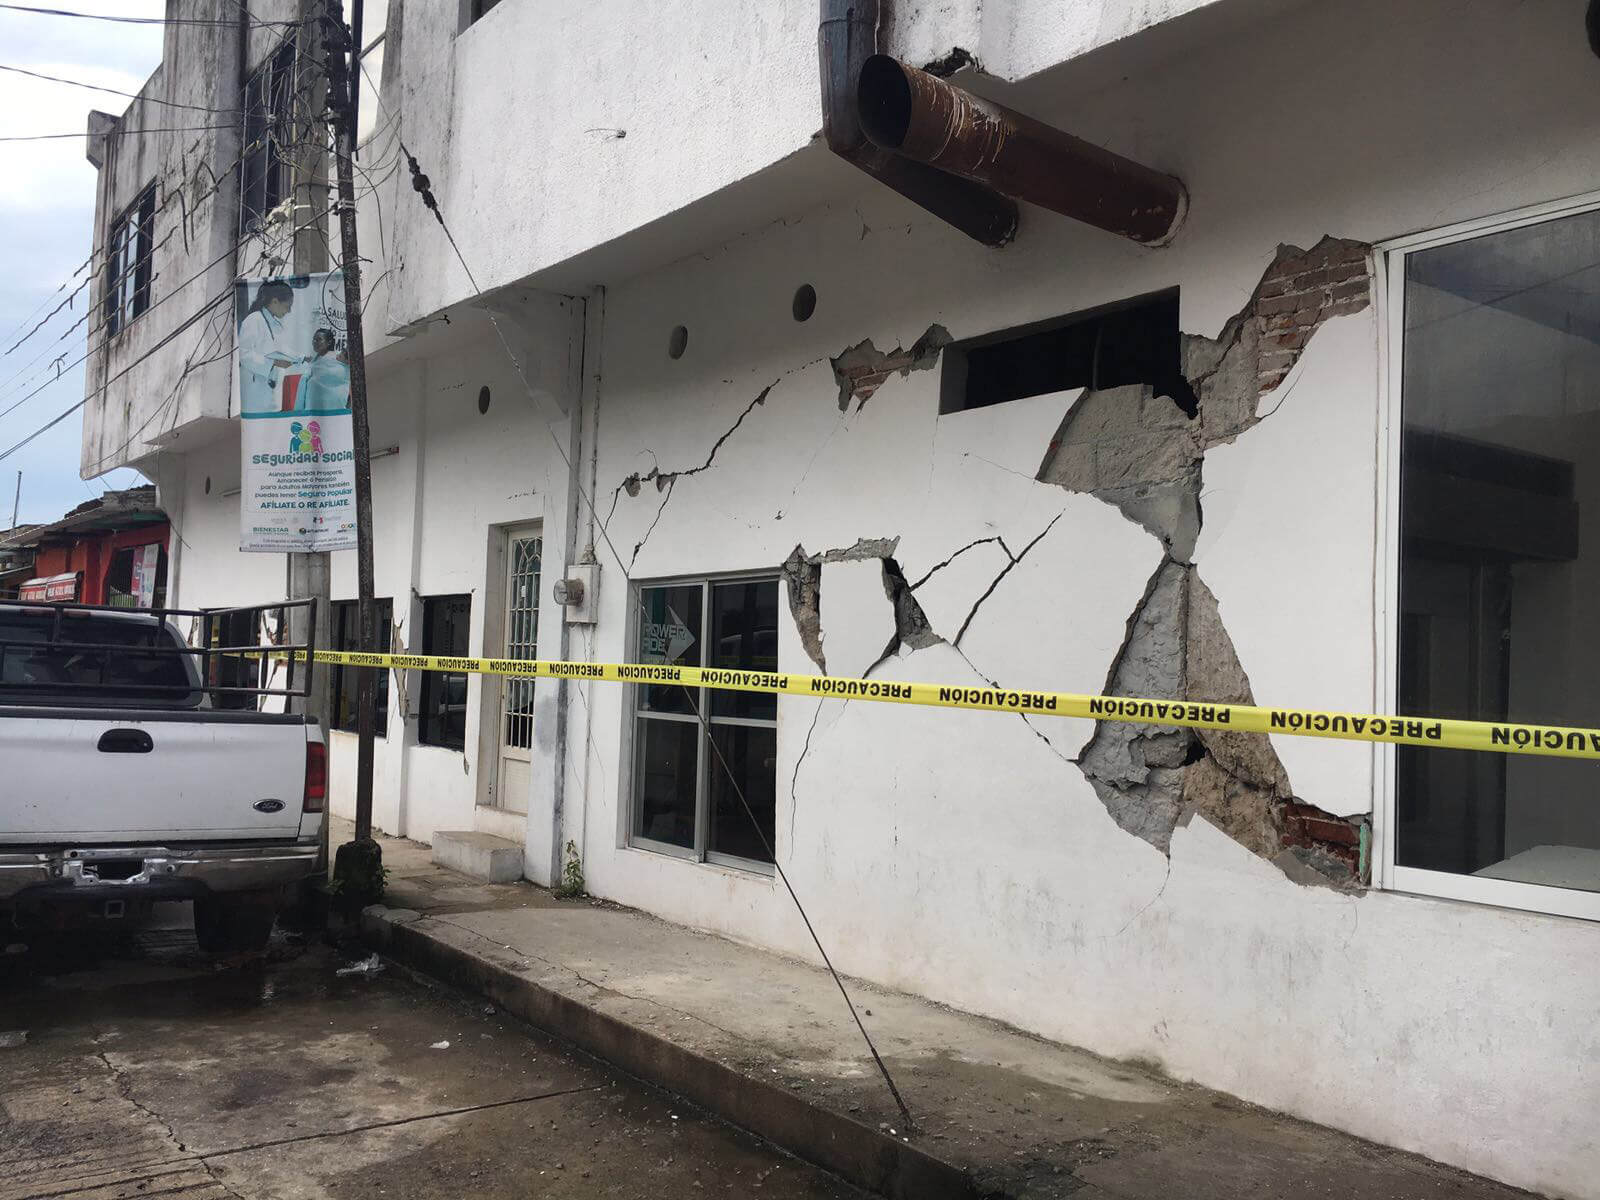 Casa afectada en Huixtla tras sismo en Chiapas